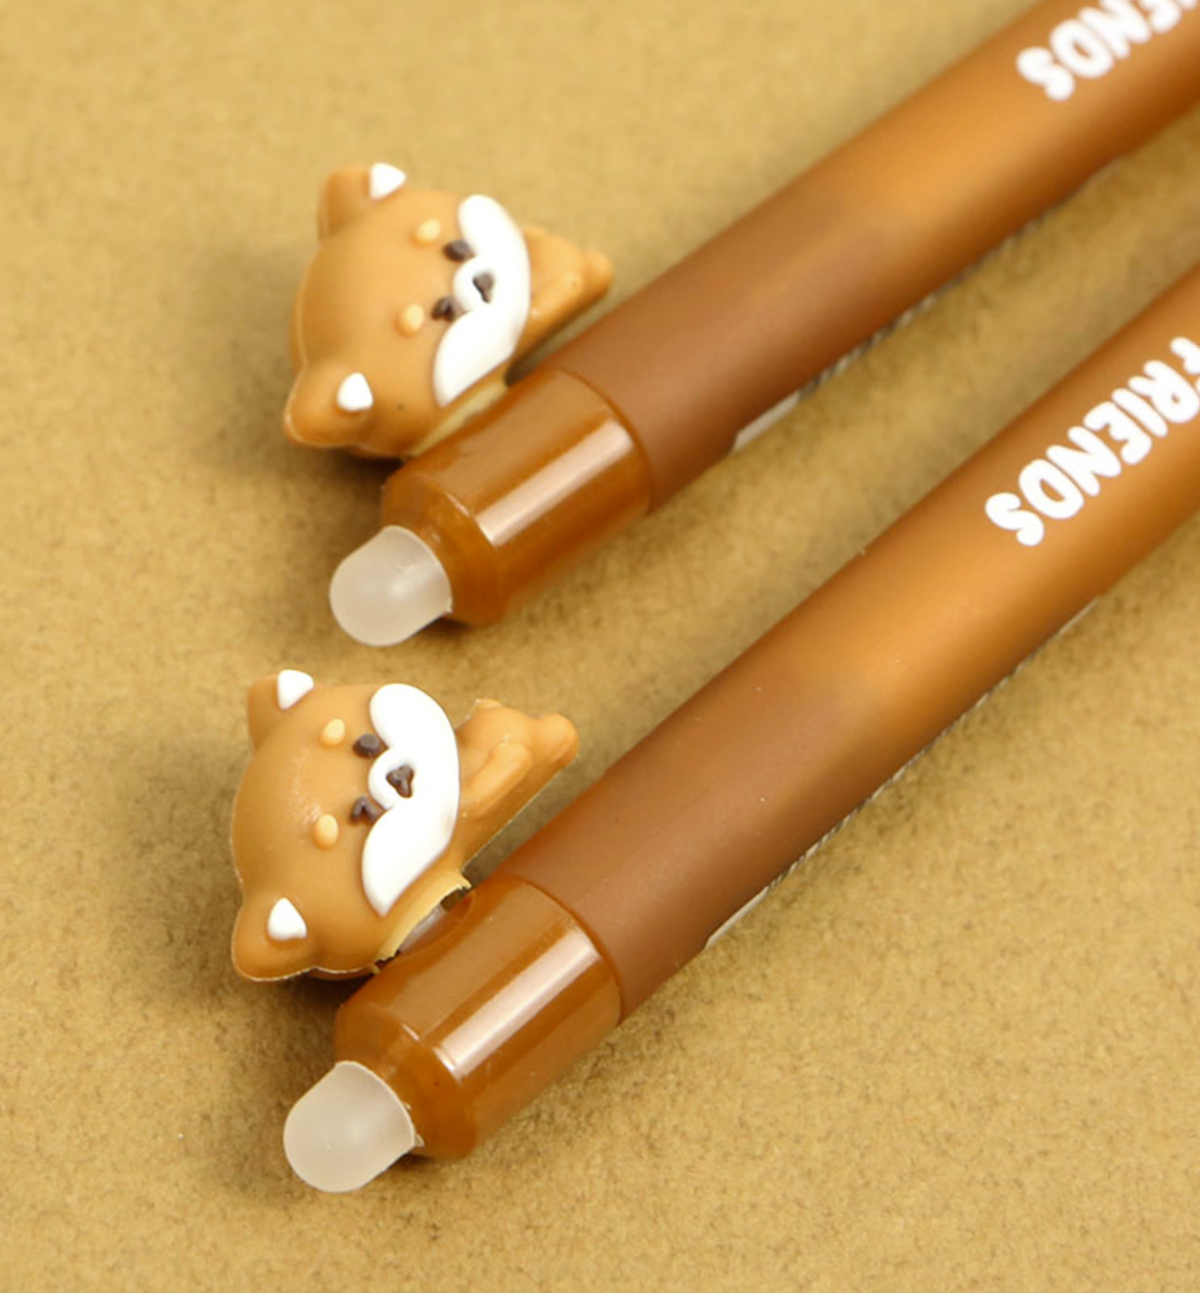 Doggy Pen + Eraser